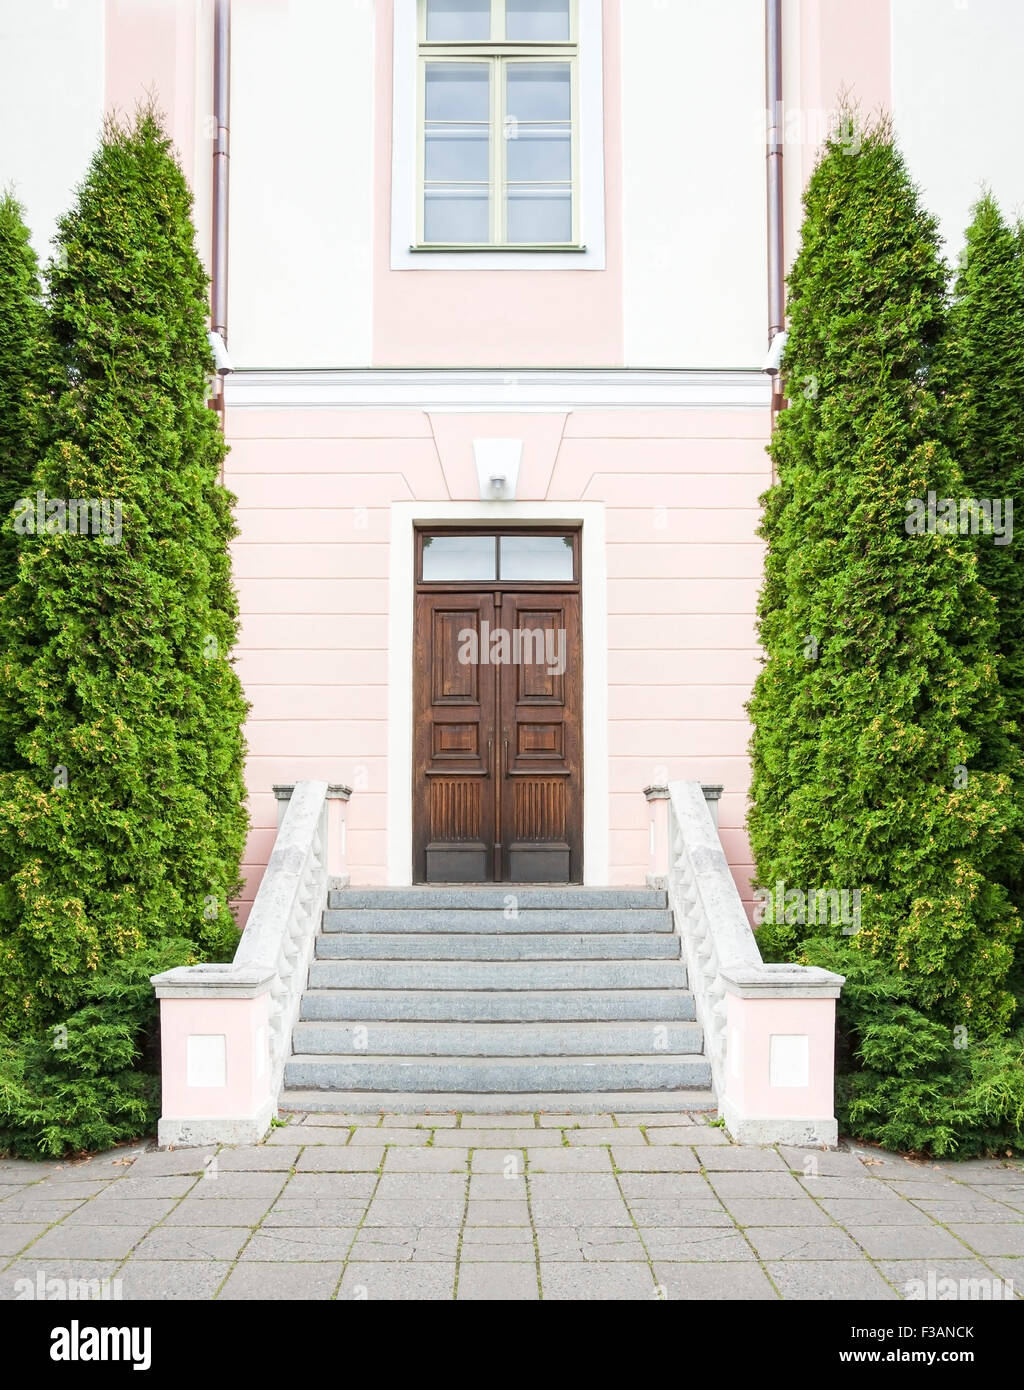 Escalier avec de grands arbres verts d'apartés menant à une maison en pierre rose avec une porte en bois brun foncé Banque D'Images